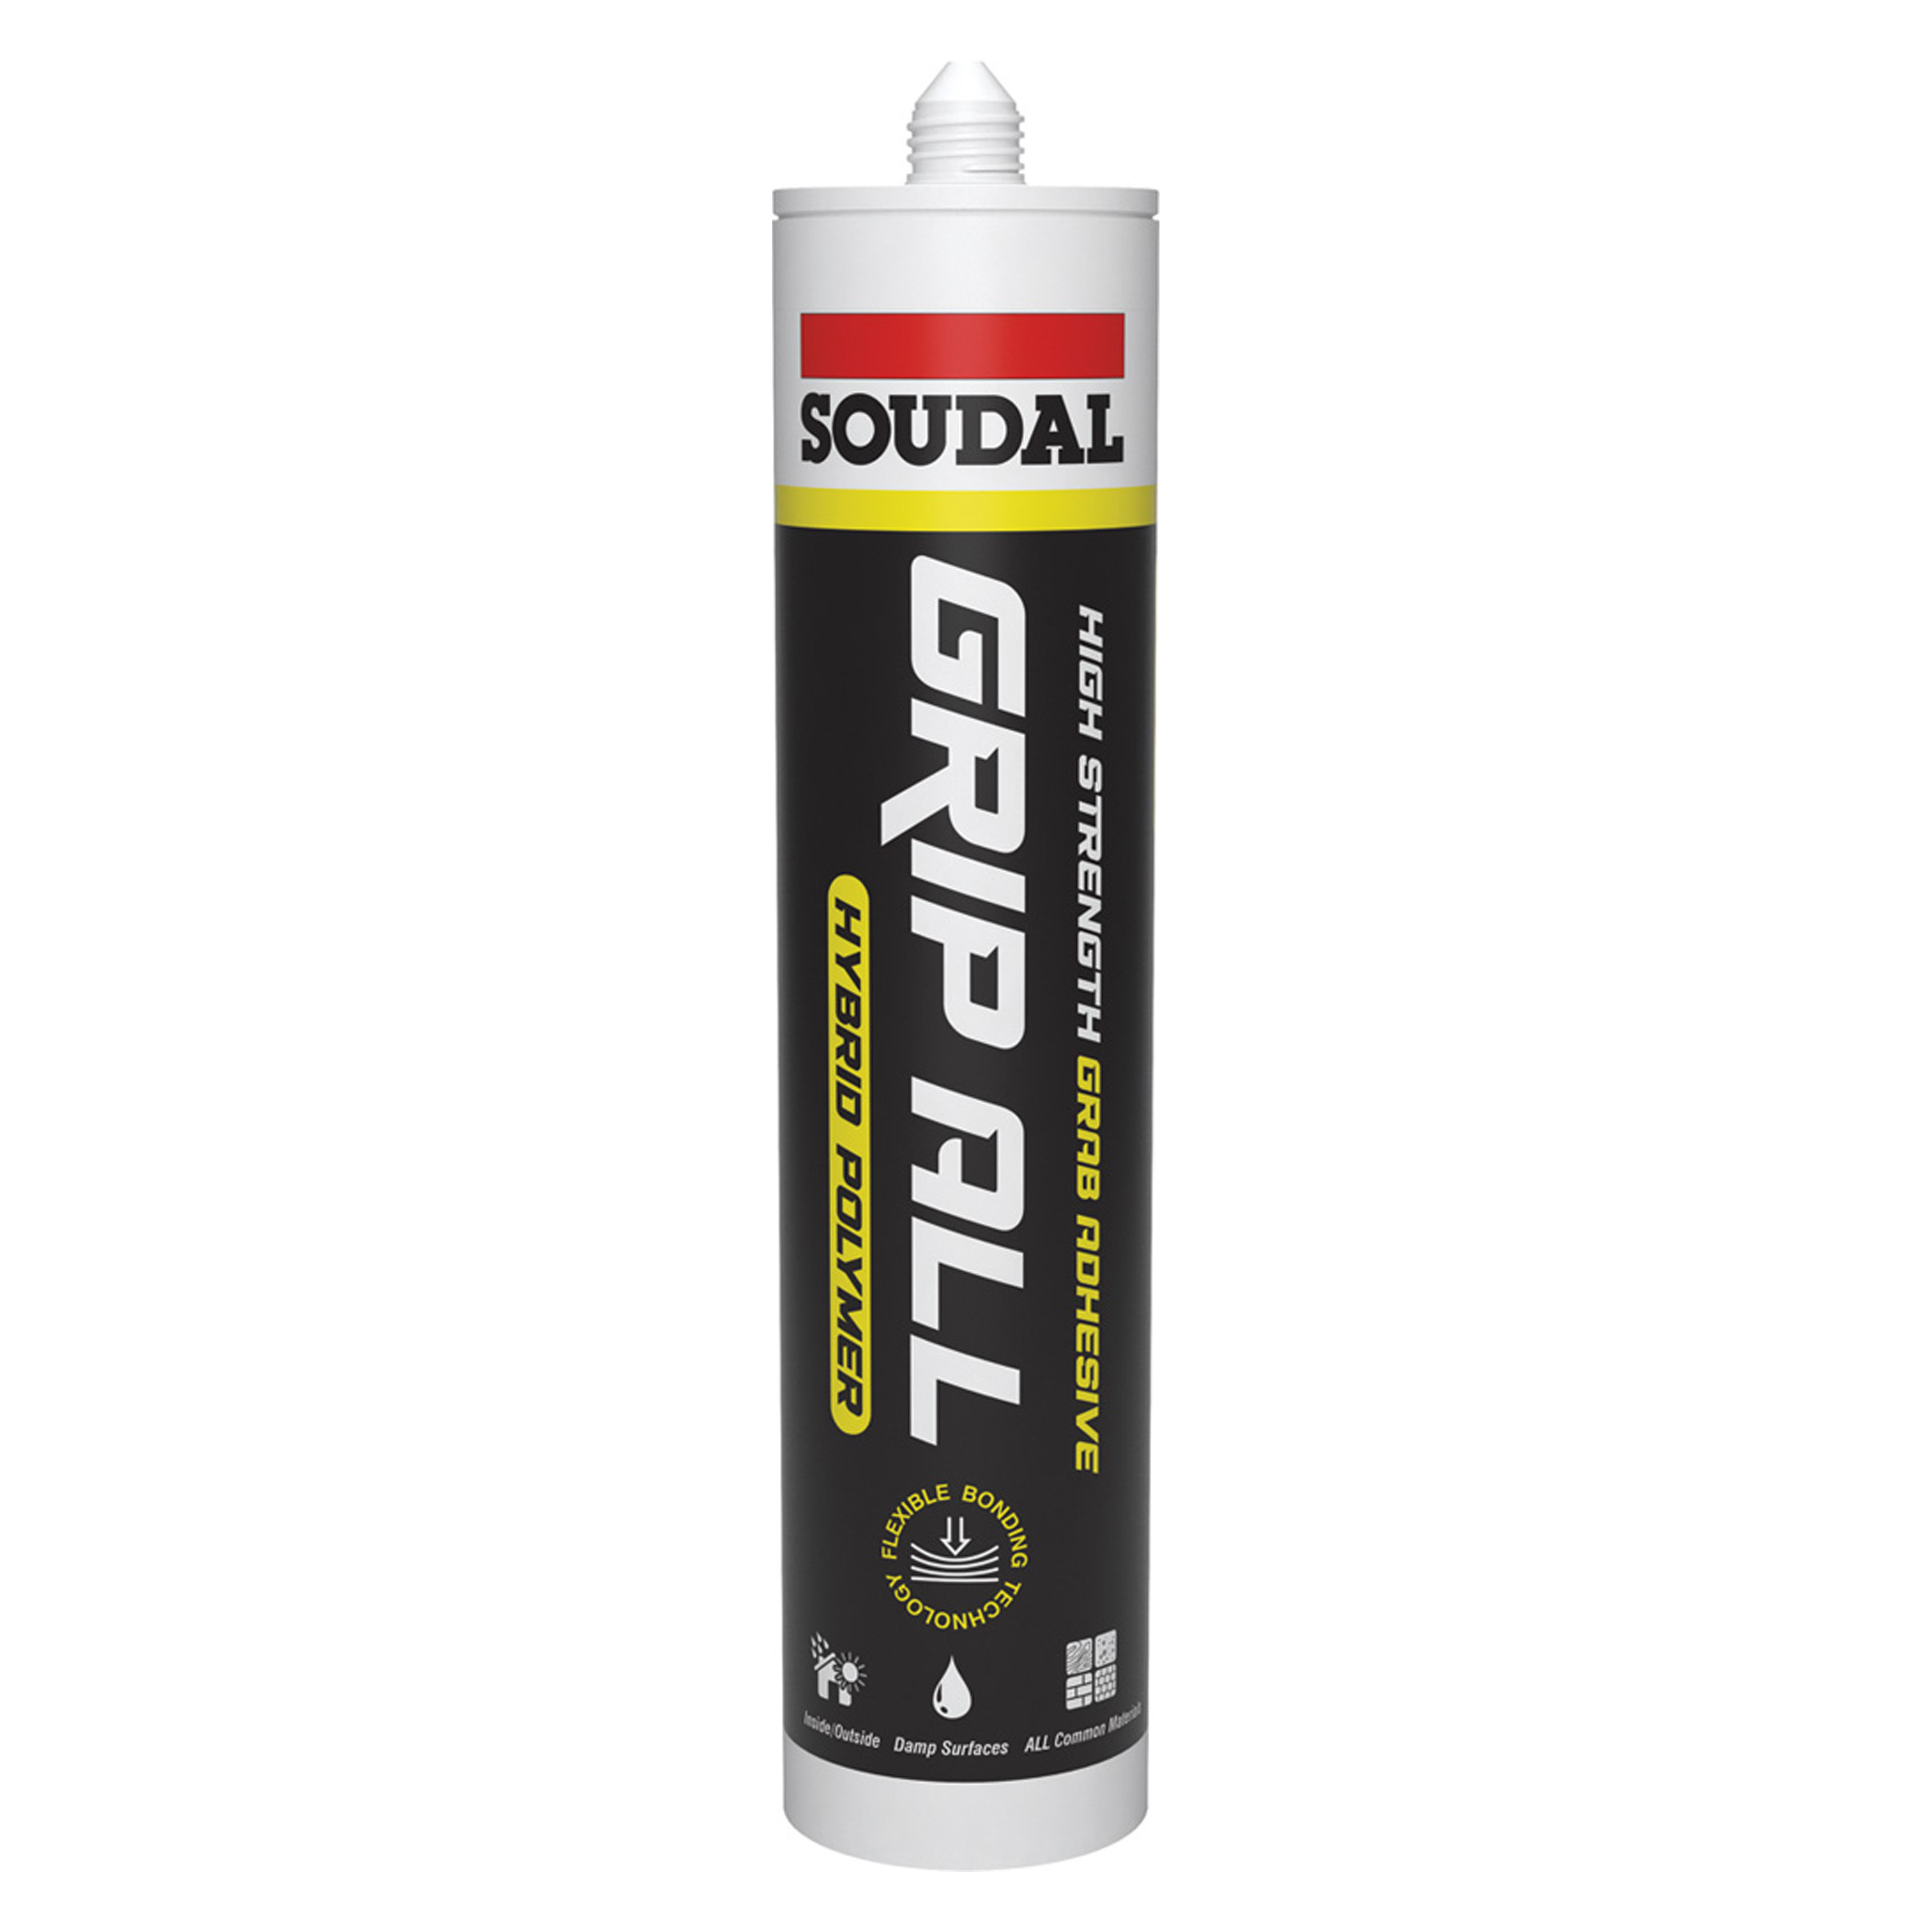 Soudal Grip All Hybrid Polymer Grey 290ml